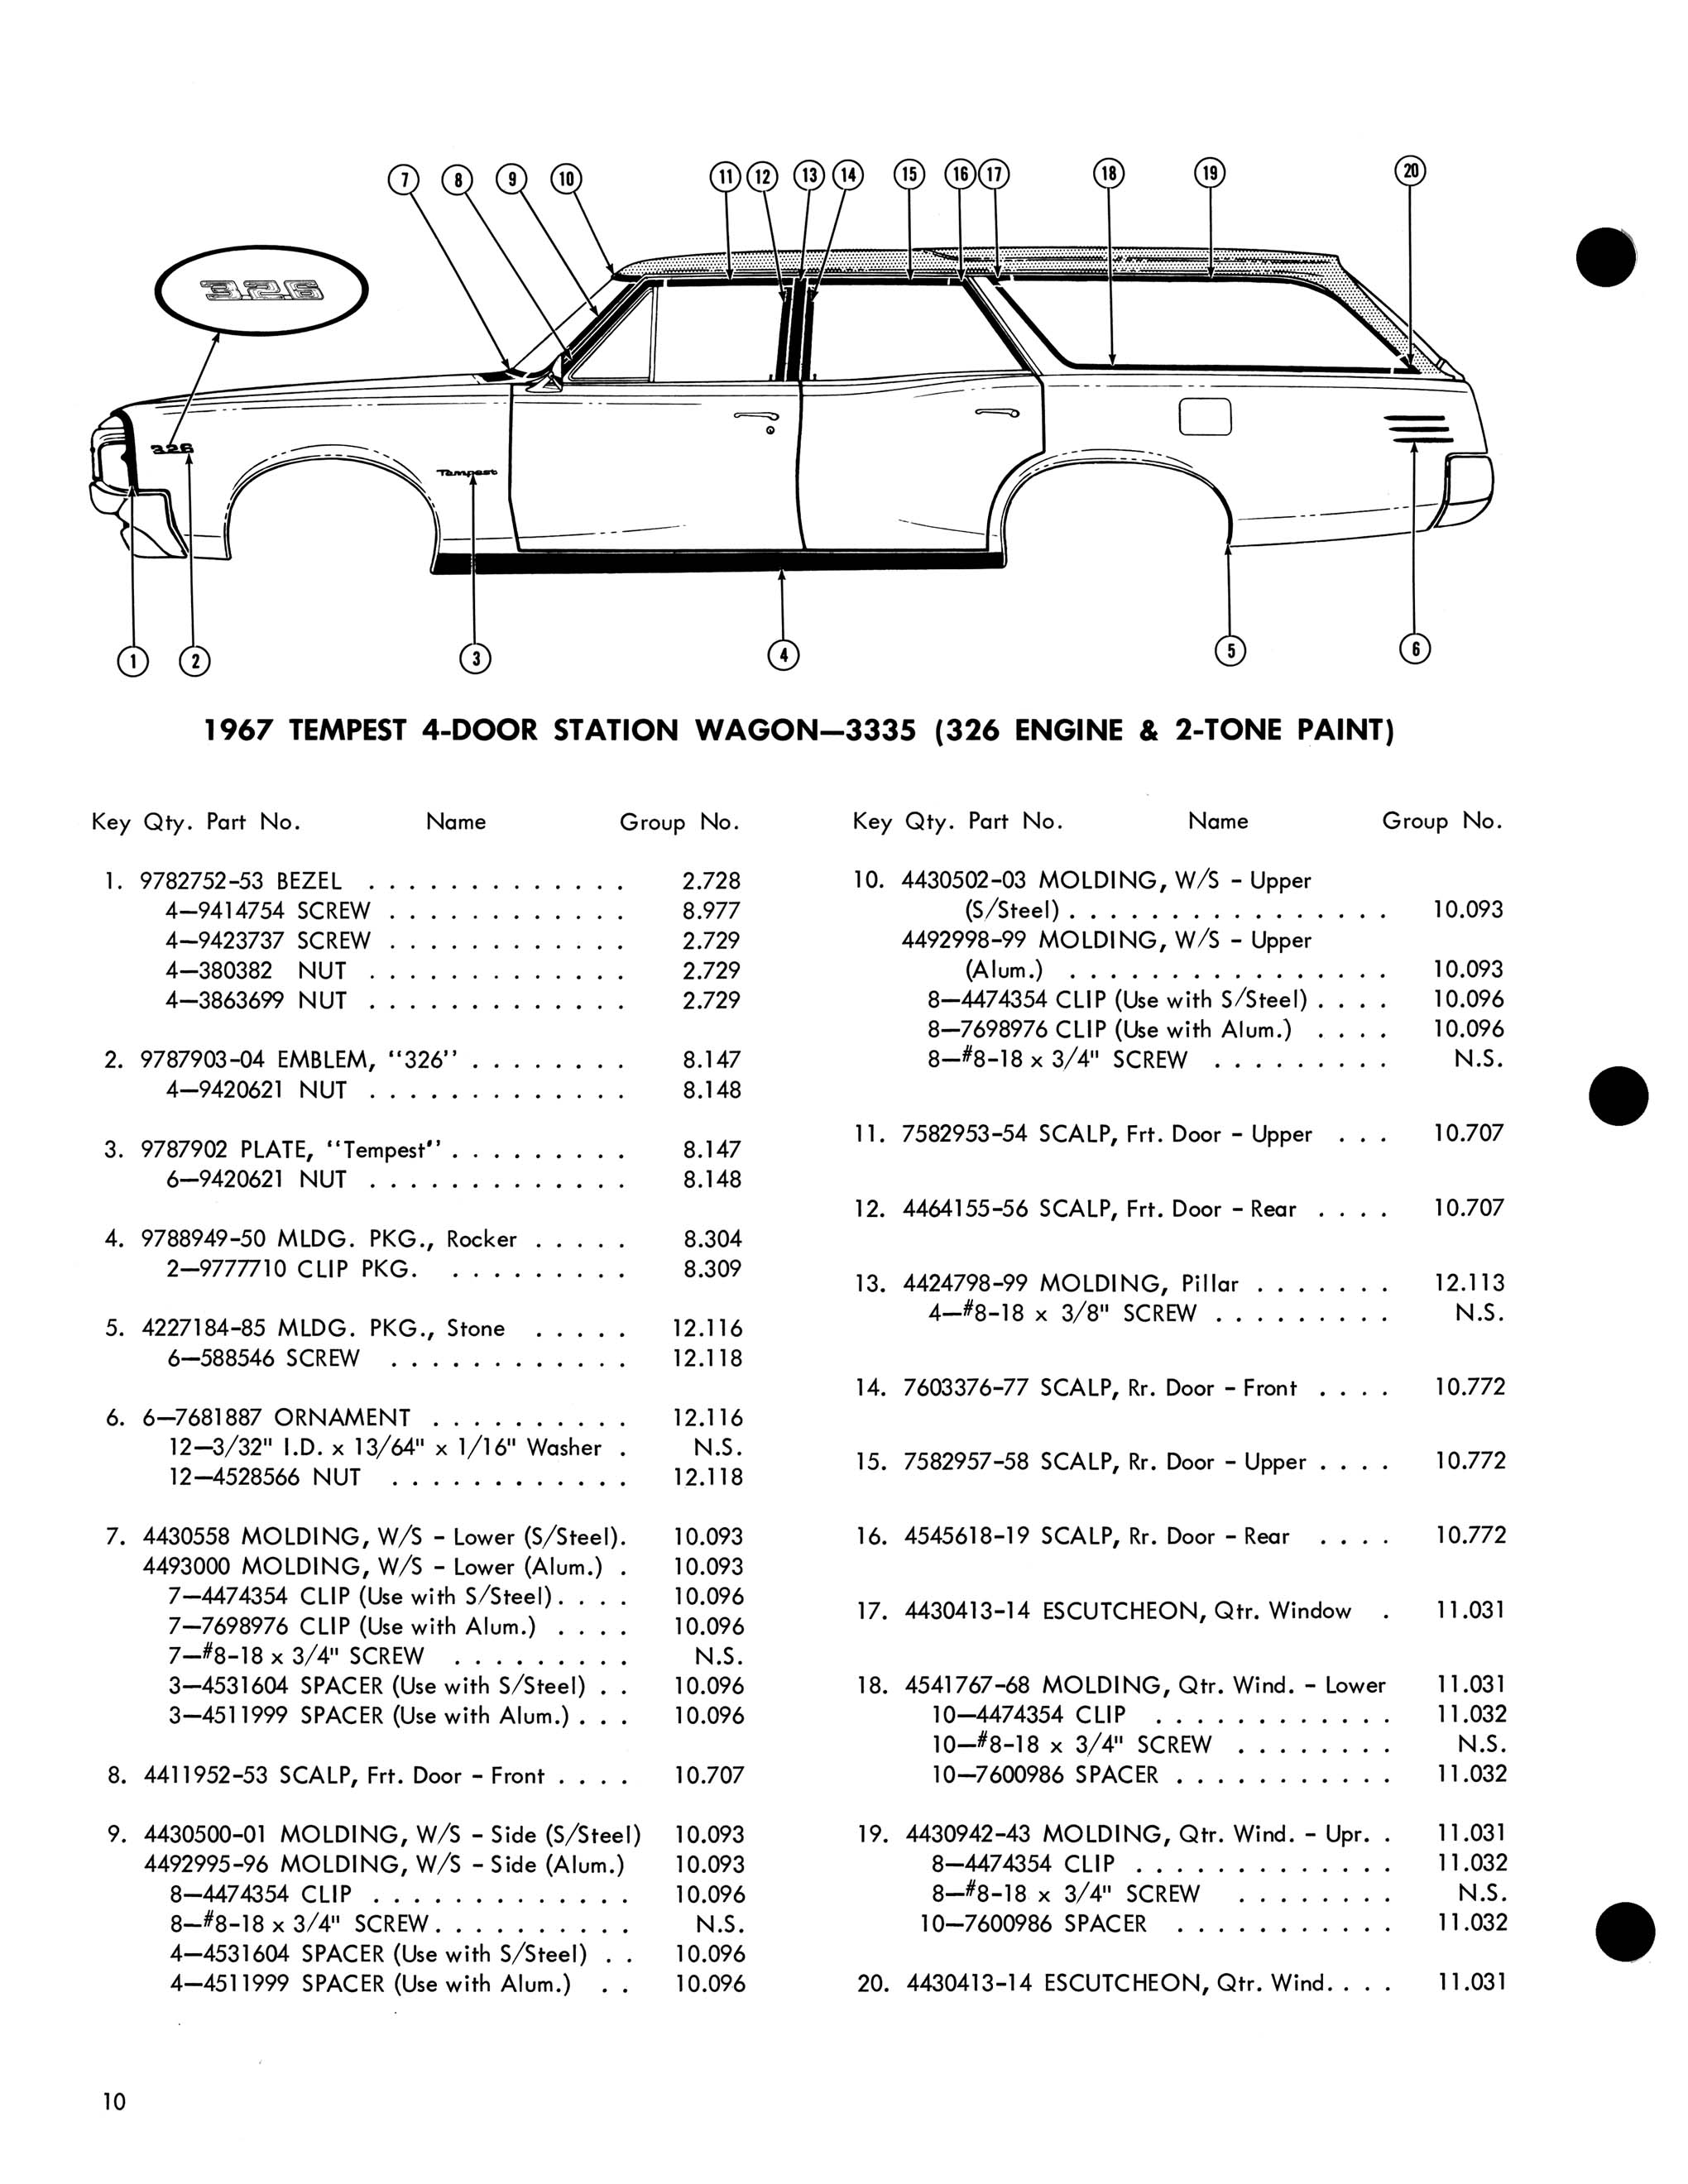 1967 Pontiac Molding and Clip Catalog-10